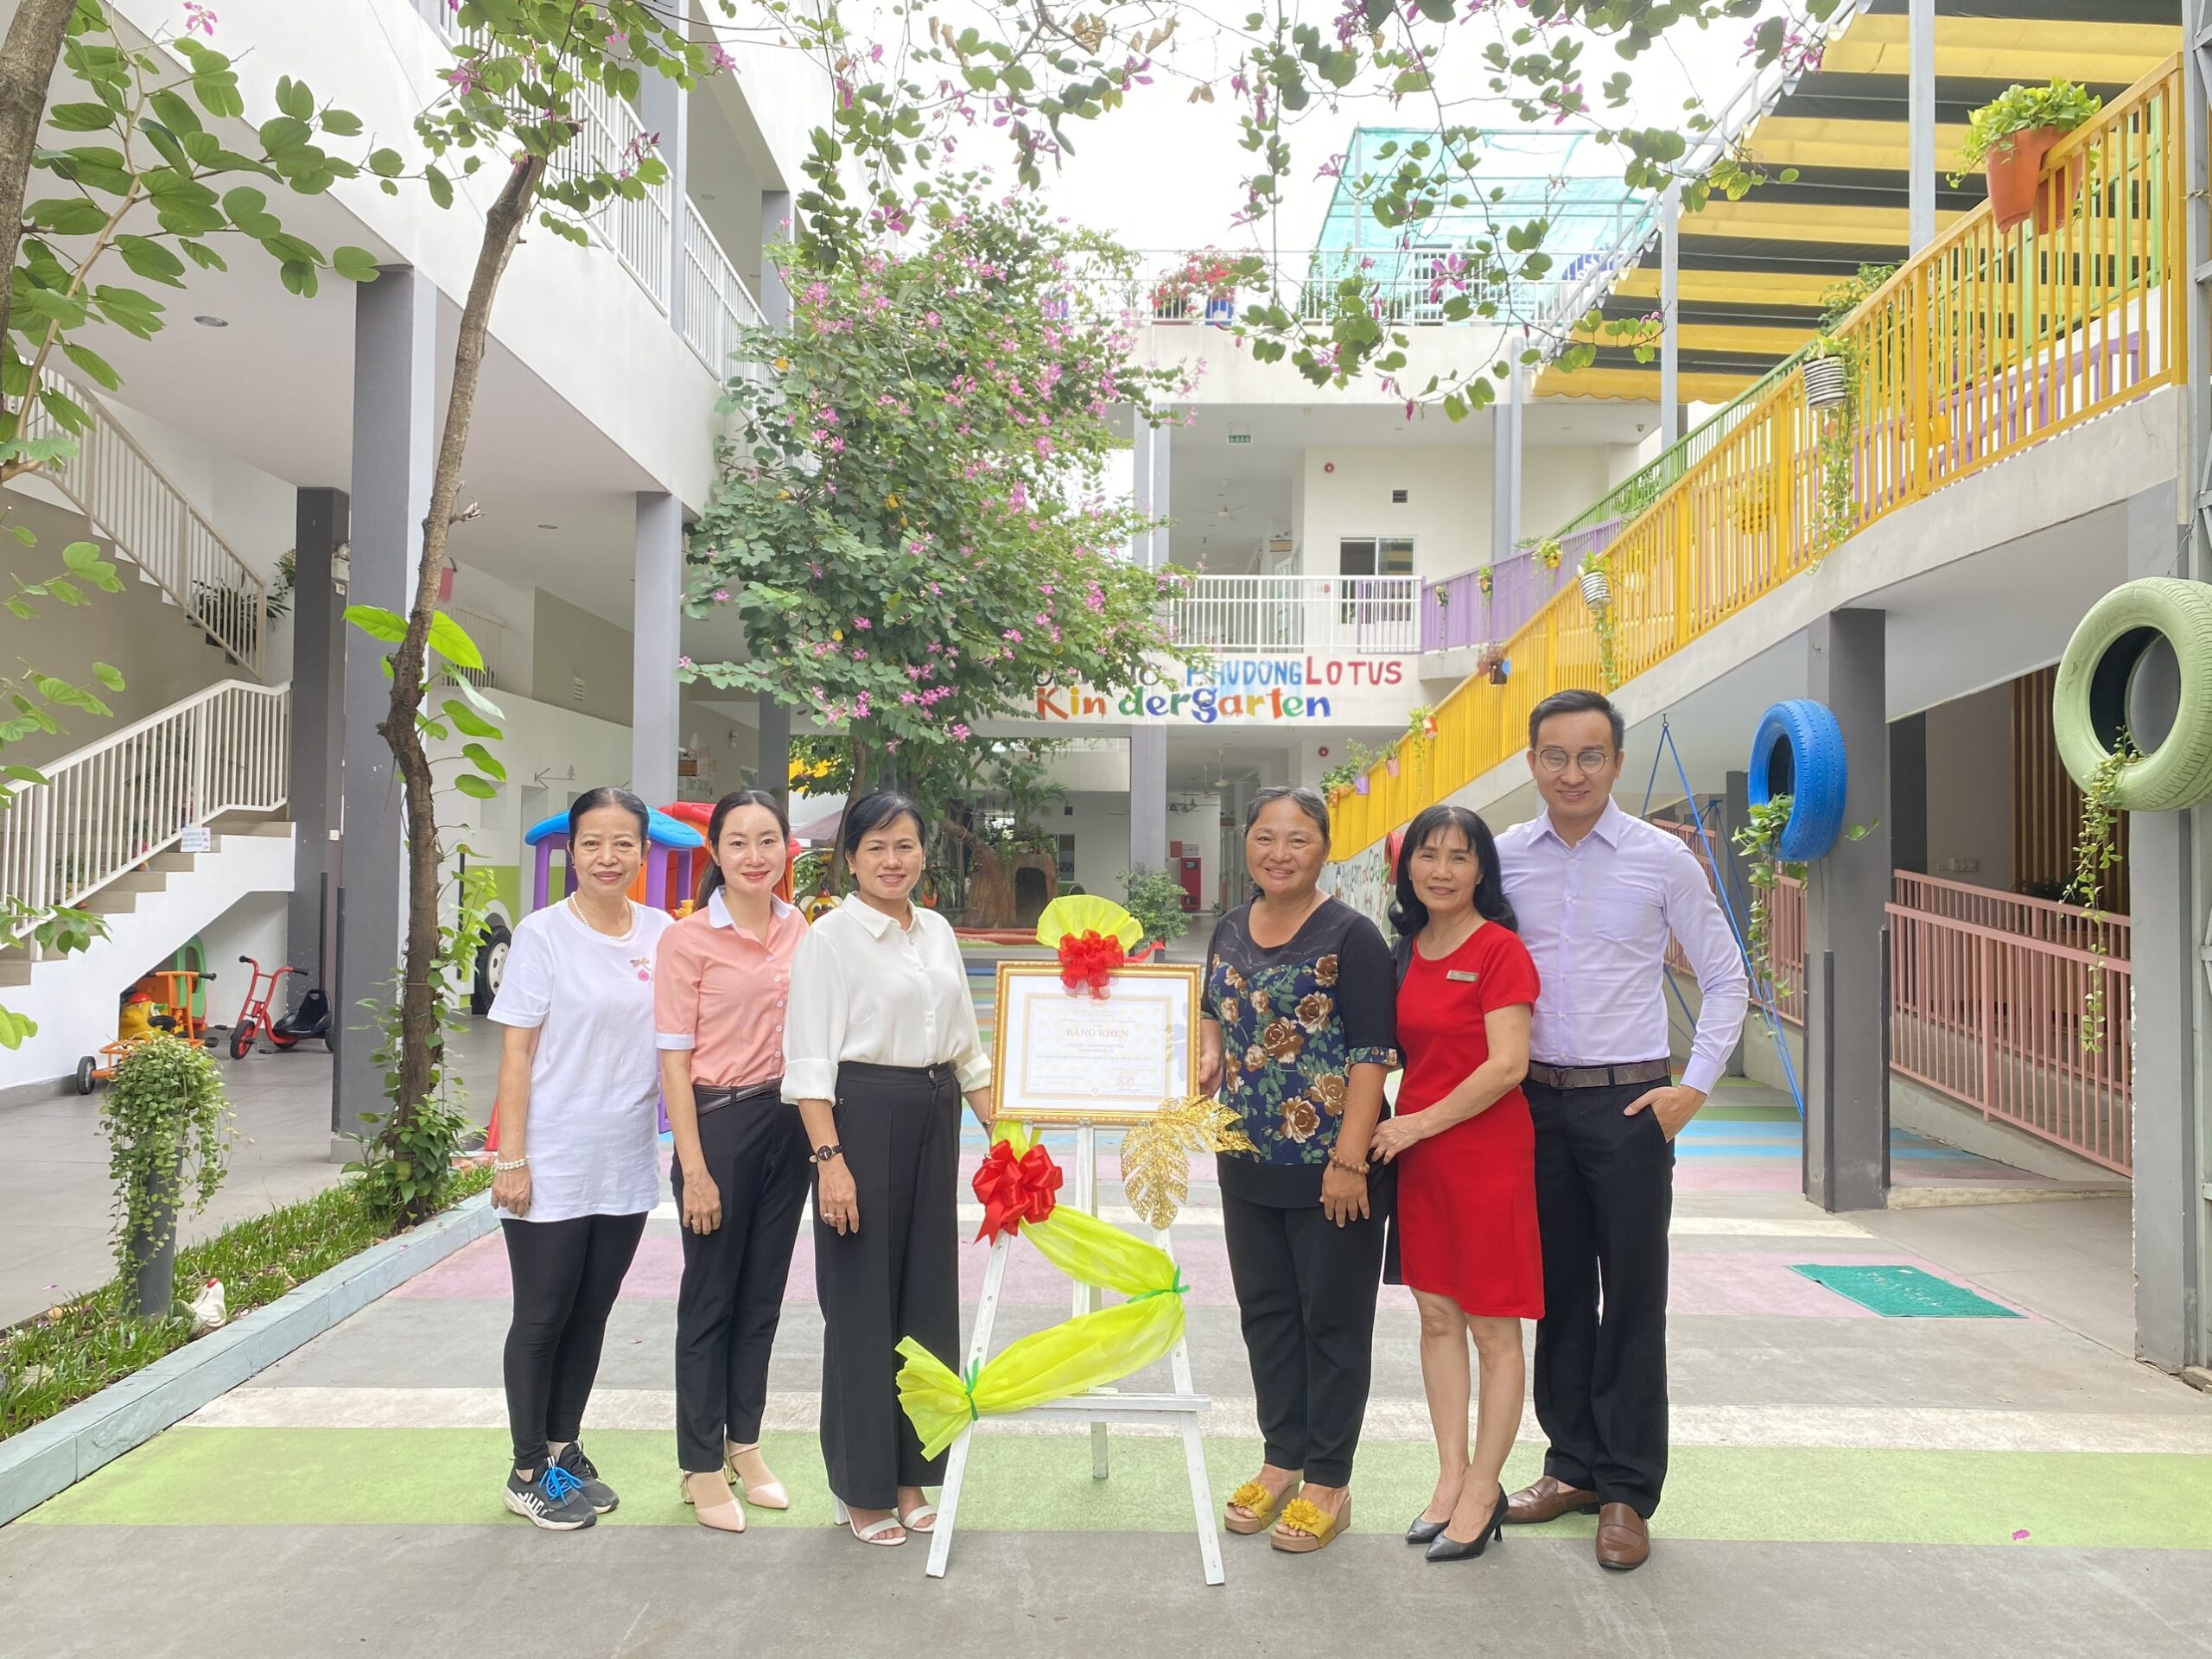 Trường Phú Đông Lotus nhận bằng khen của Chủ tịch UBND tỉnh Bình Dương.